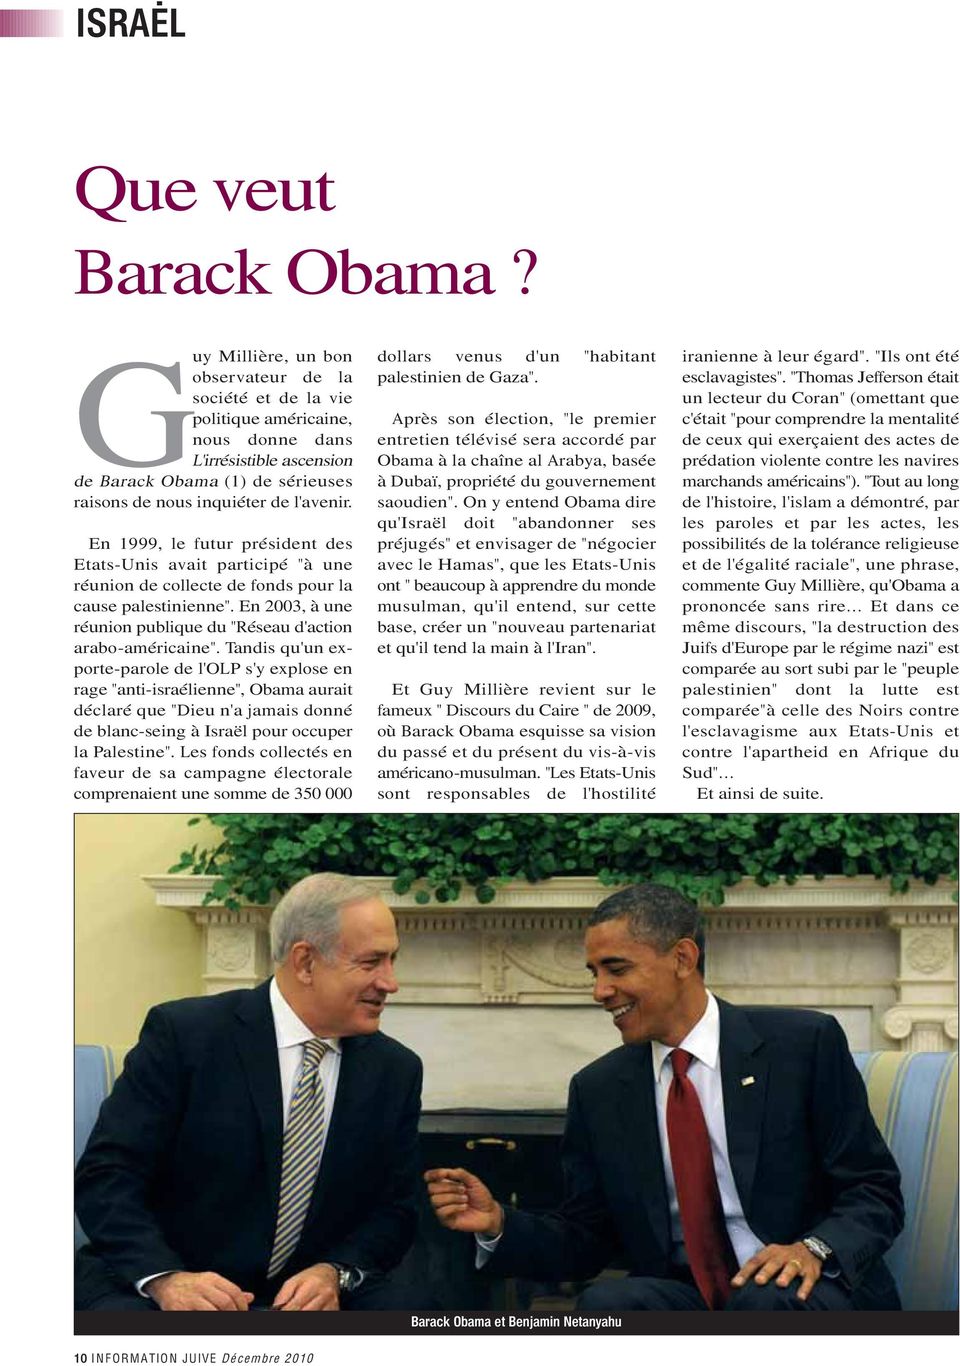 En 1999, le futur président des Etats-Unis avait participé "à une réunion de collecte de fonds pour la cause palestinienne". En 2003, à une réunion publique du "Réseau d'action arabo-américaine".